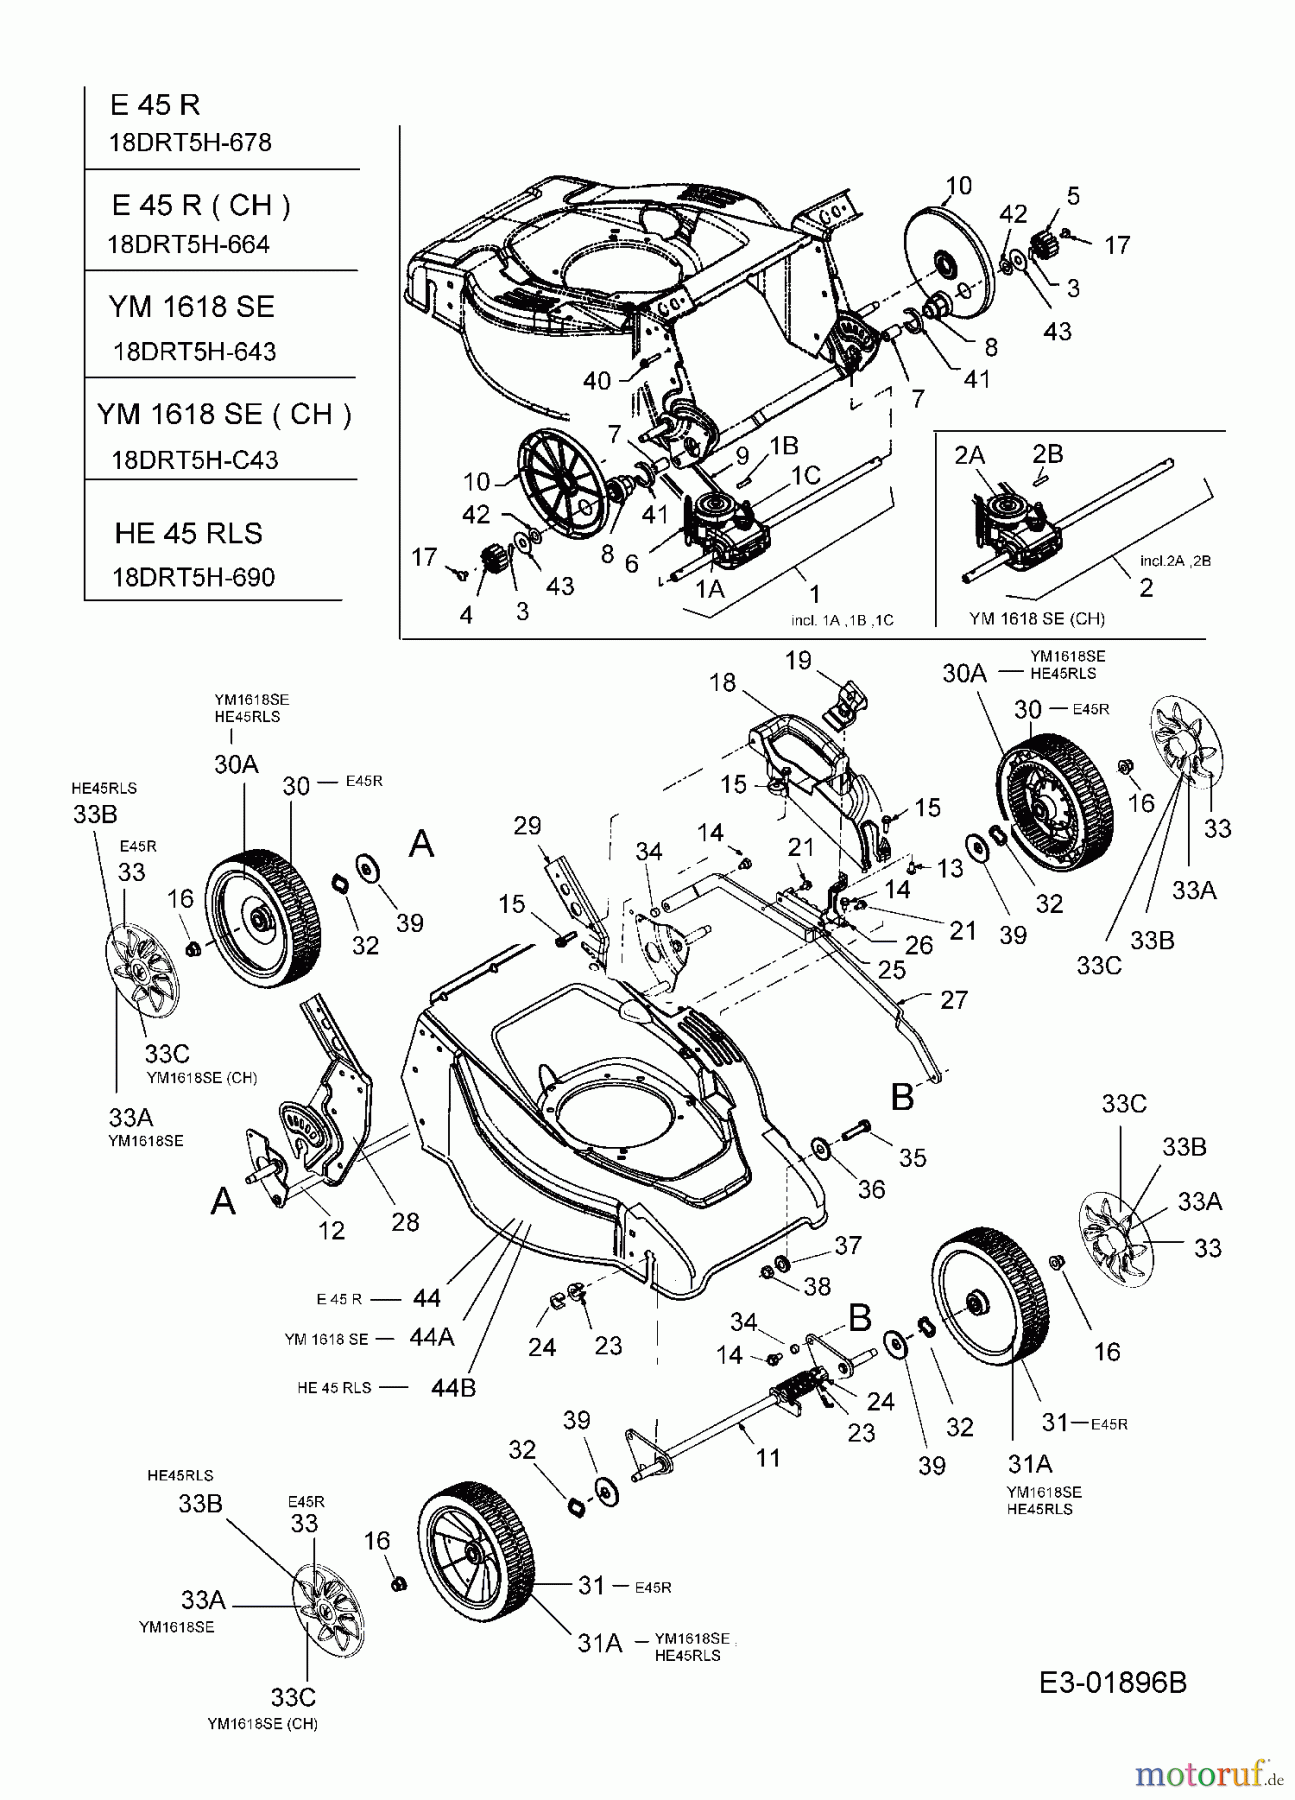  MTD Elektromäher mit Antrieb E 45 R 18DRT5H-678  (2005) Getriebe, Räder, Schnitthöhenverstellung